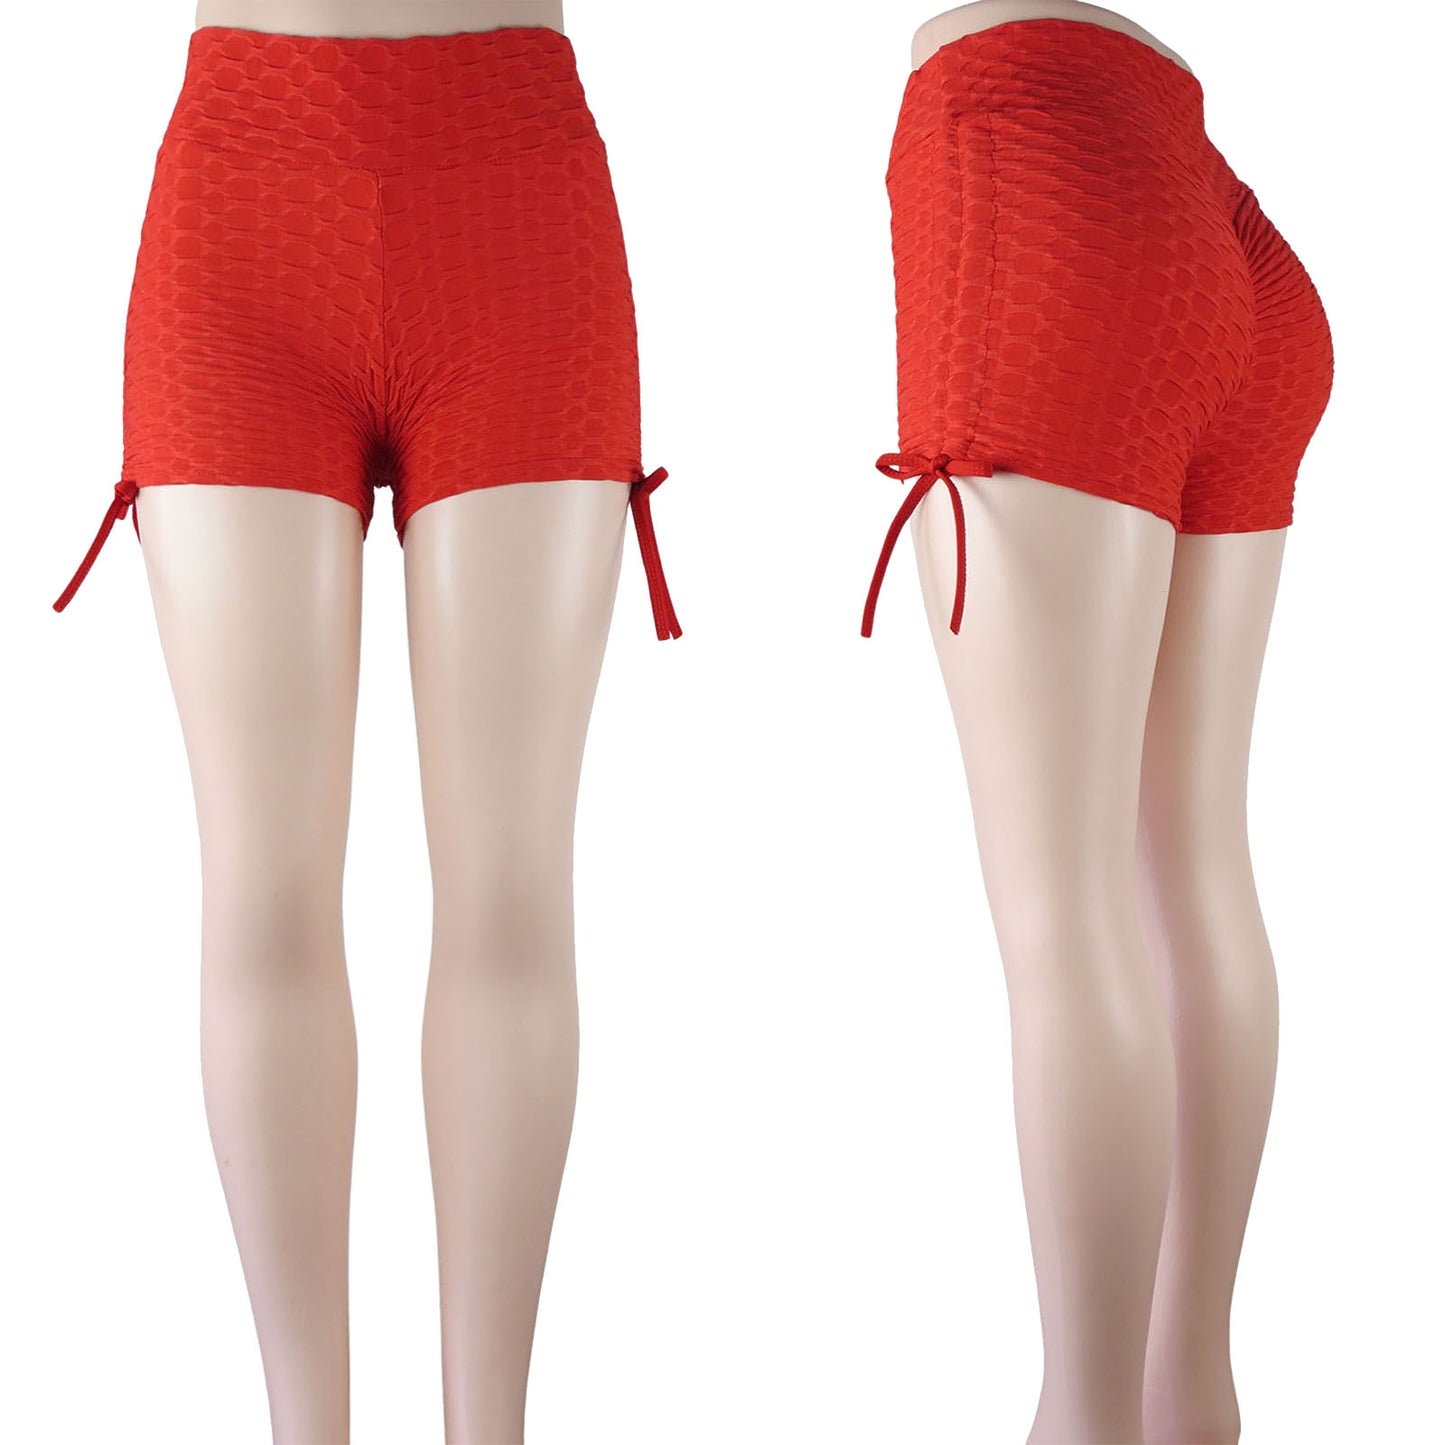 Red Booty Lift Tiktok Shorts for Women's